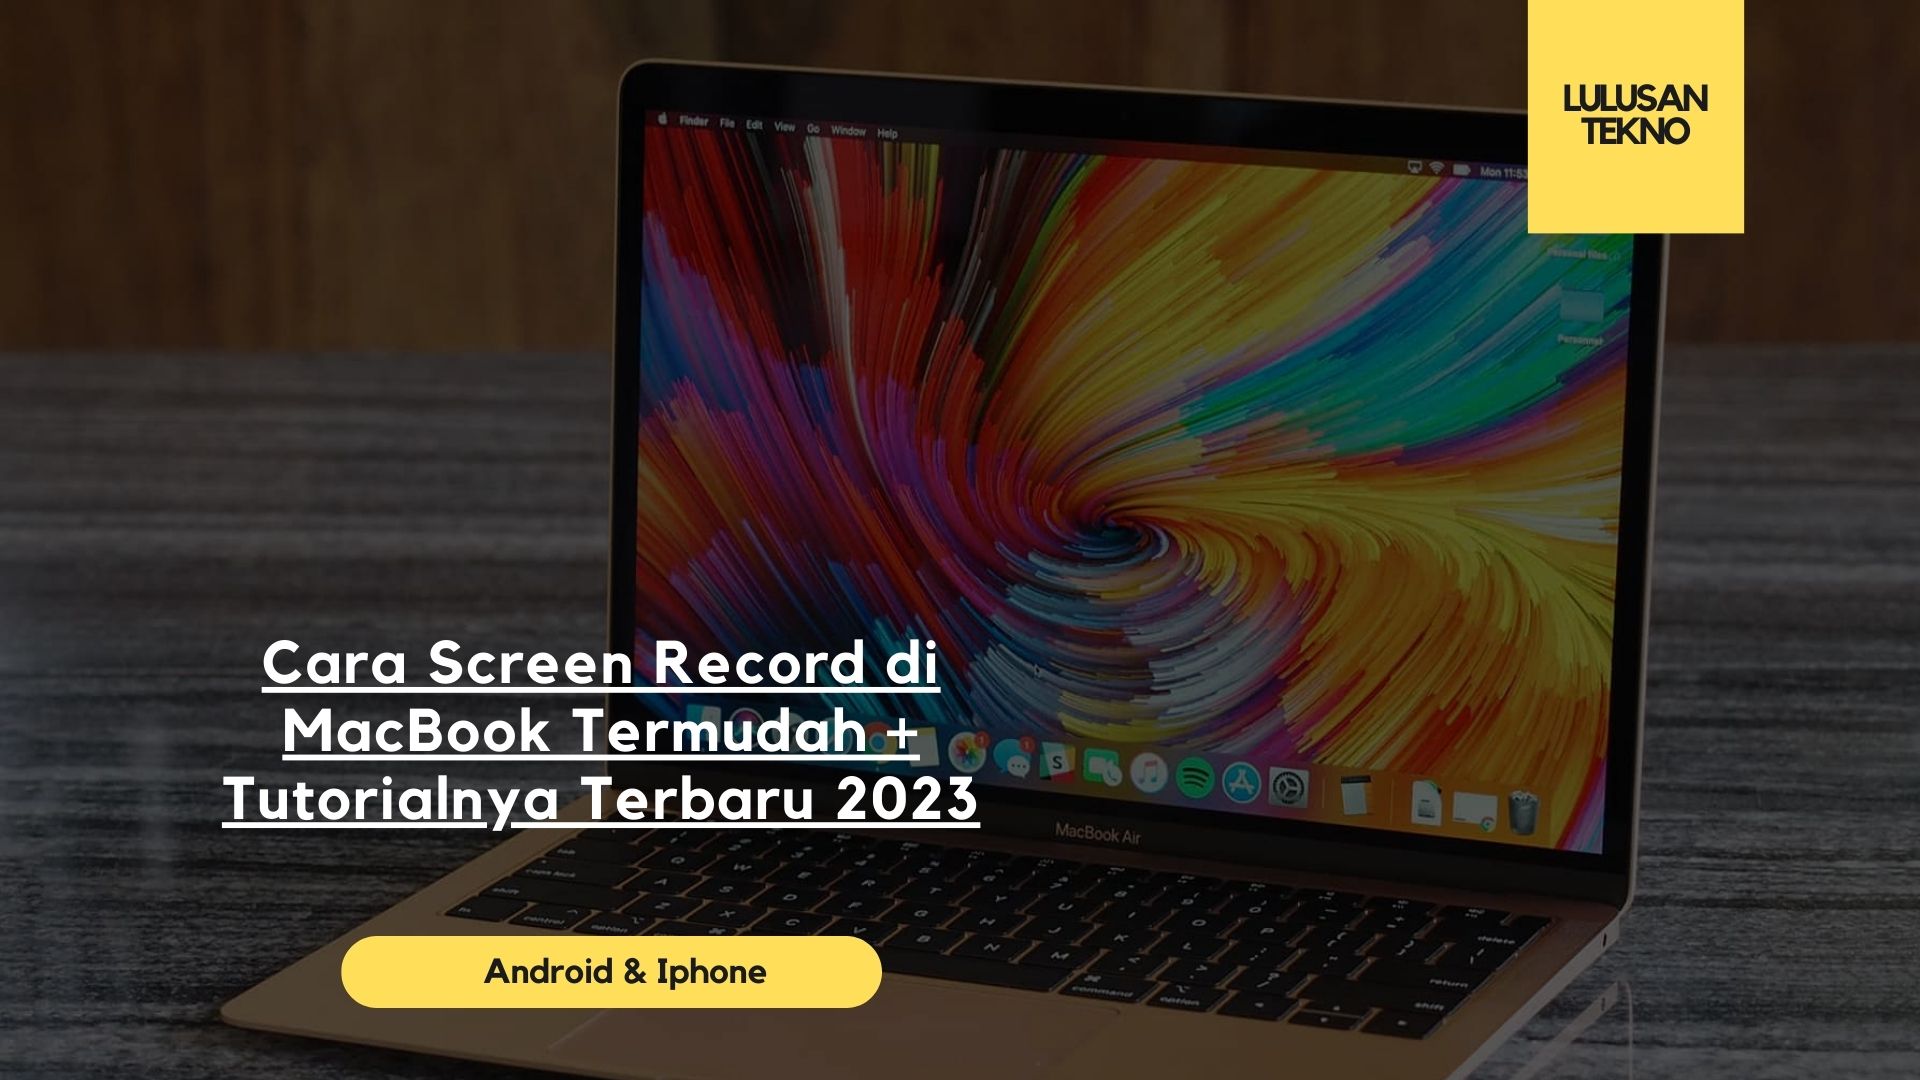 Cara Screen Record di MacBook Termudah + Tutorialnya Terbaru 2023